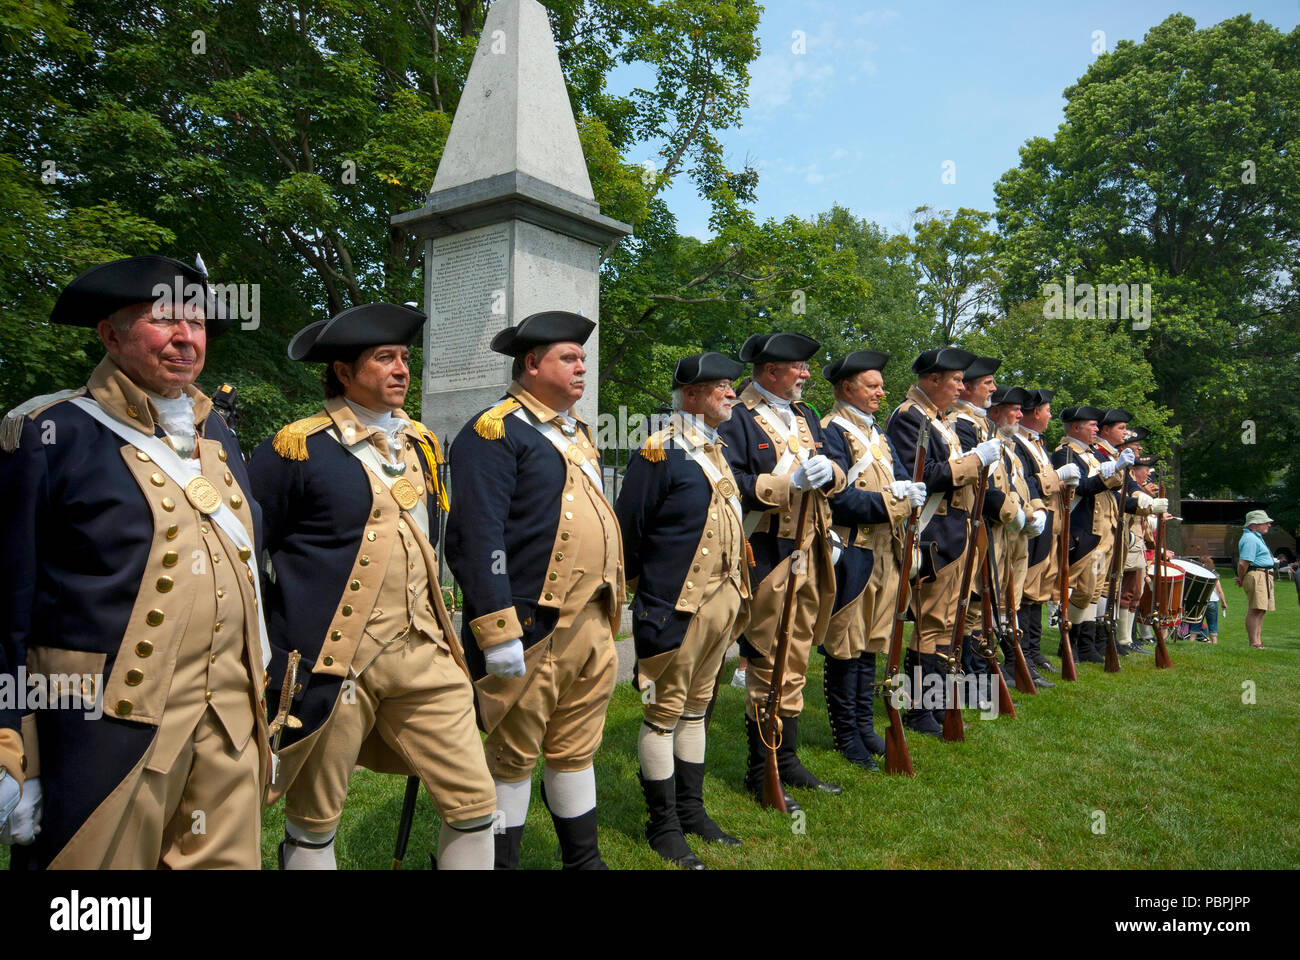 Les hommes en uniforme militaire pour rejouer la guerre d'Indépendance américaine, Lexington Battle Green, Lexington, comté de Middlesex, Massachusetts, USA Banque D'Images